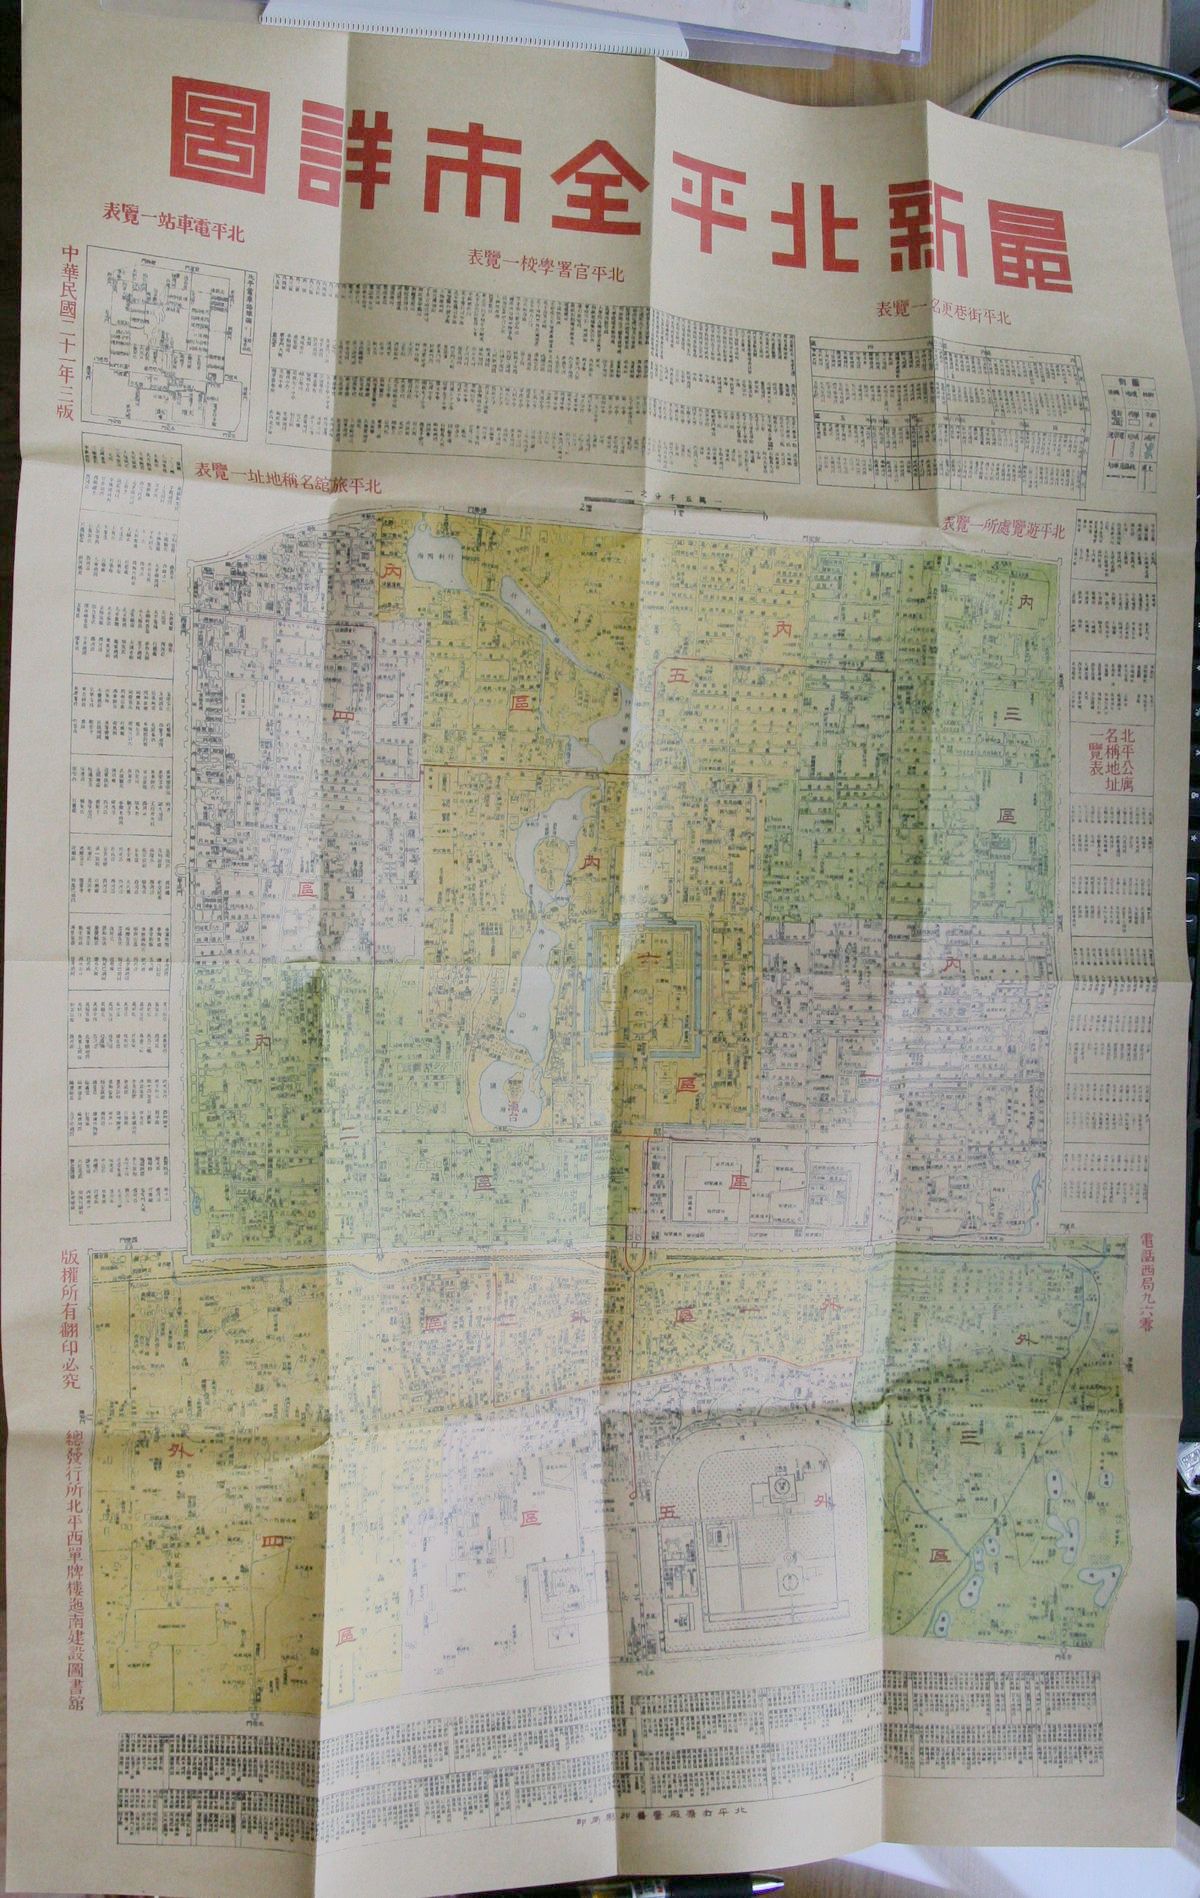 F7308, "New" Map of Beijing (Peking) 1932, Reprint